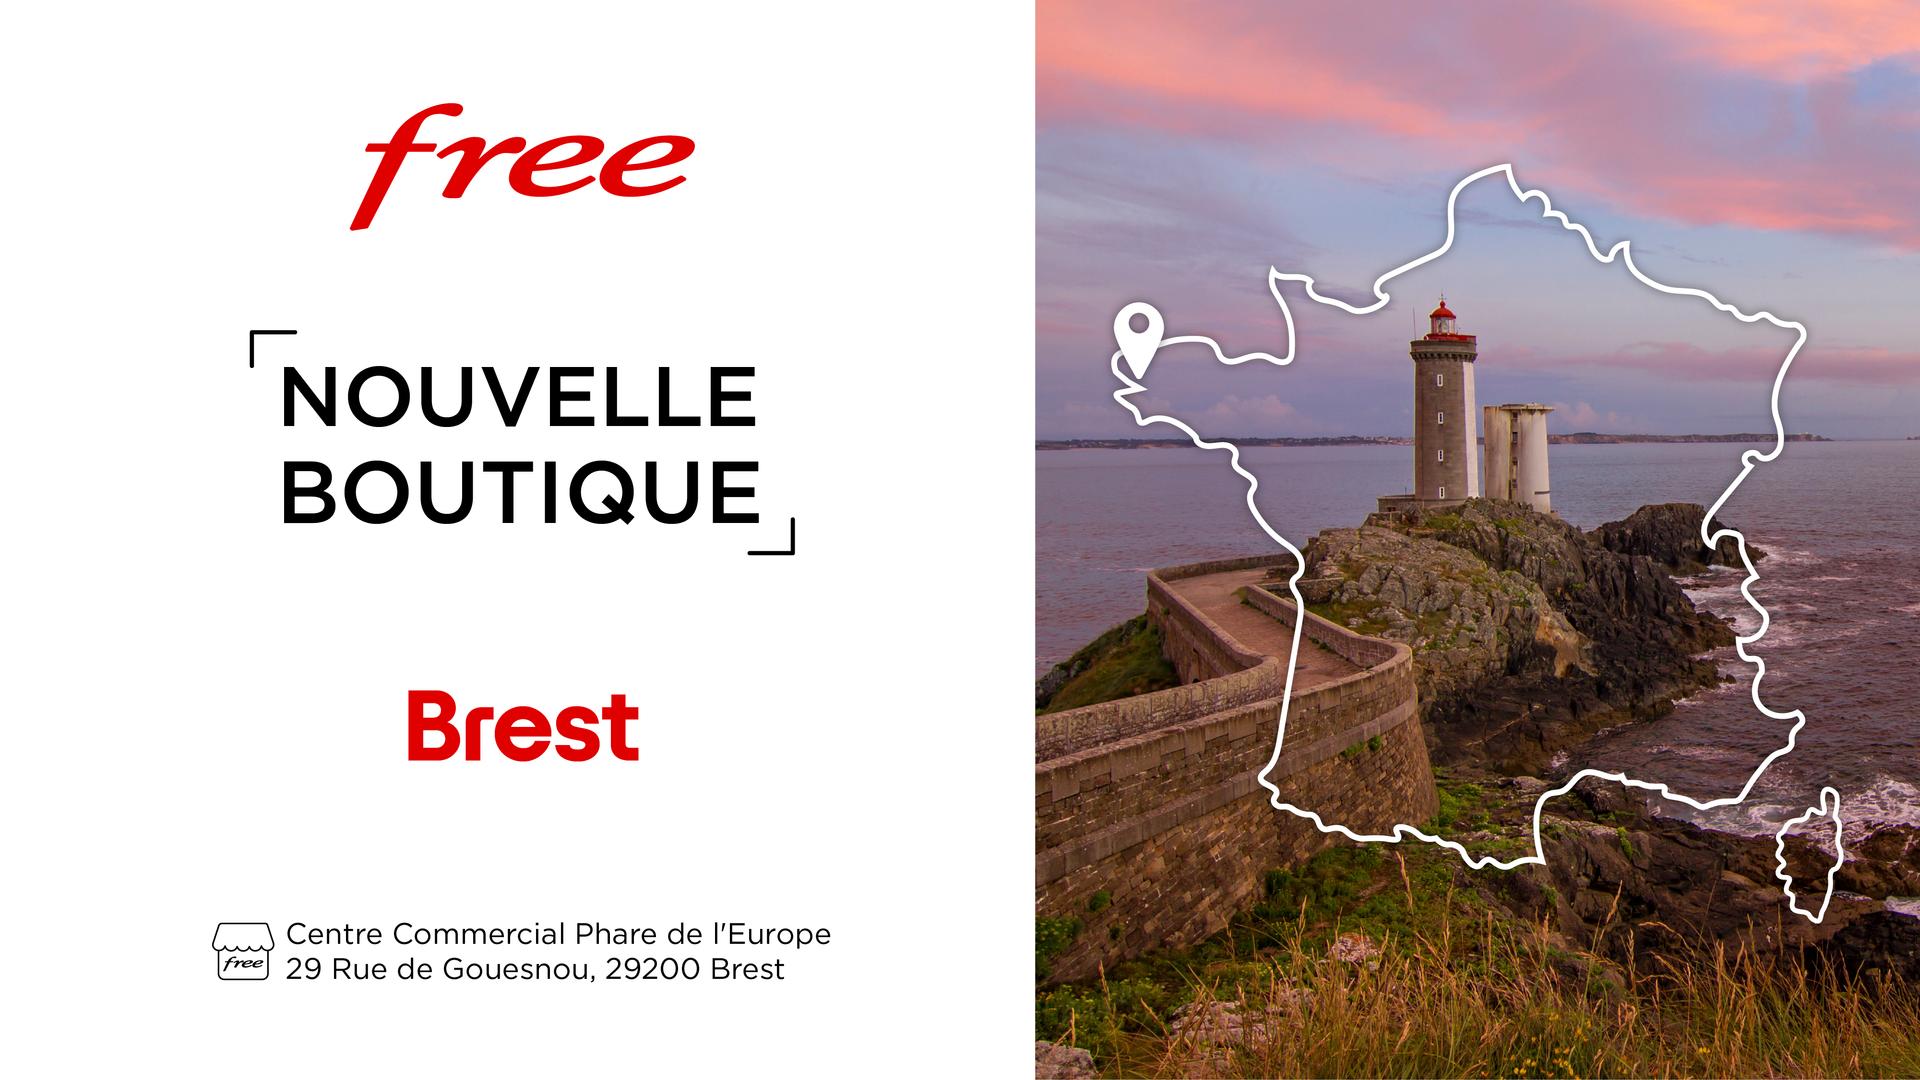 Découvrez la nouvelle boutique Free de Brest